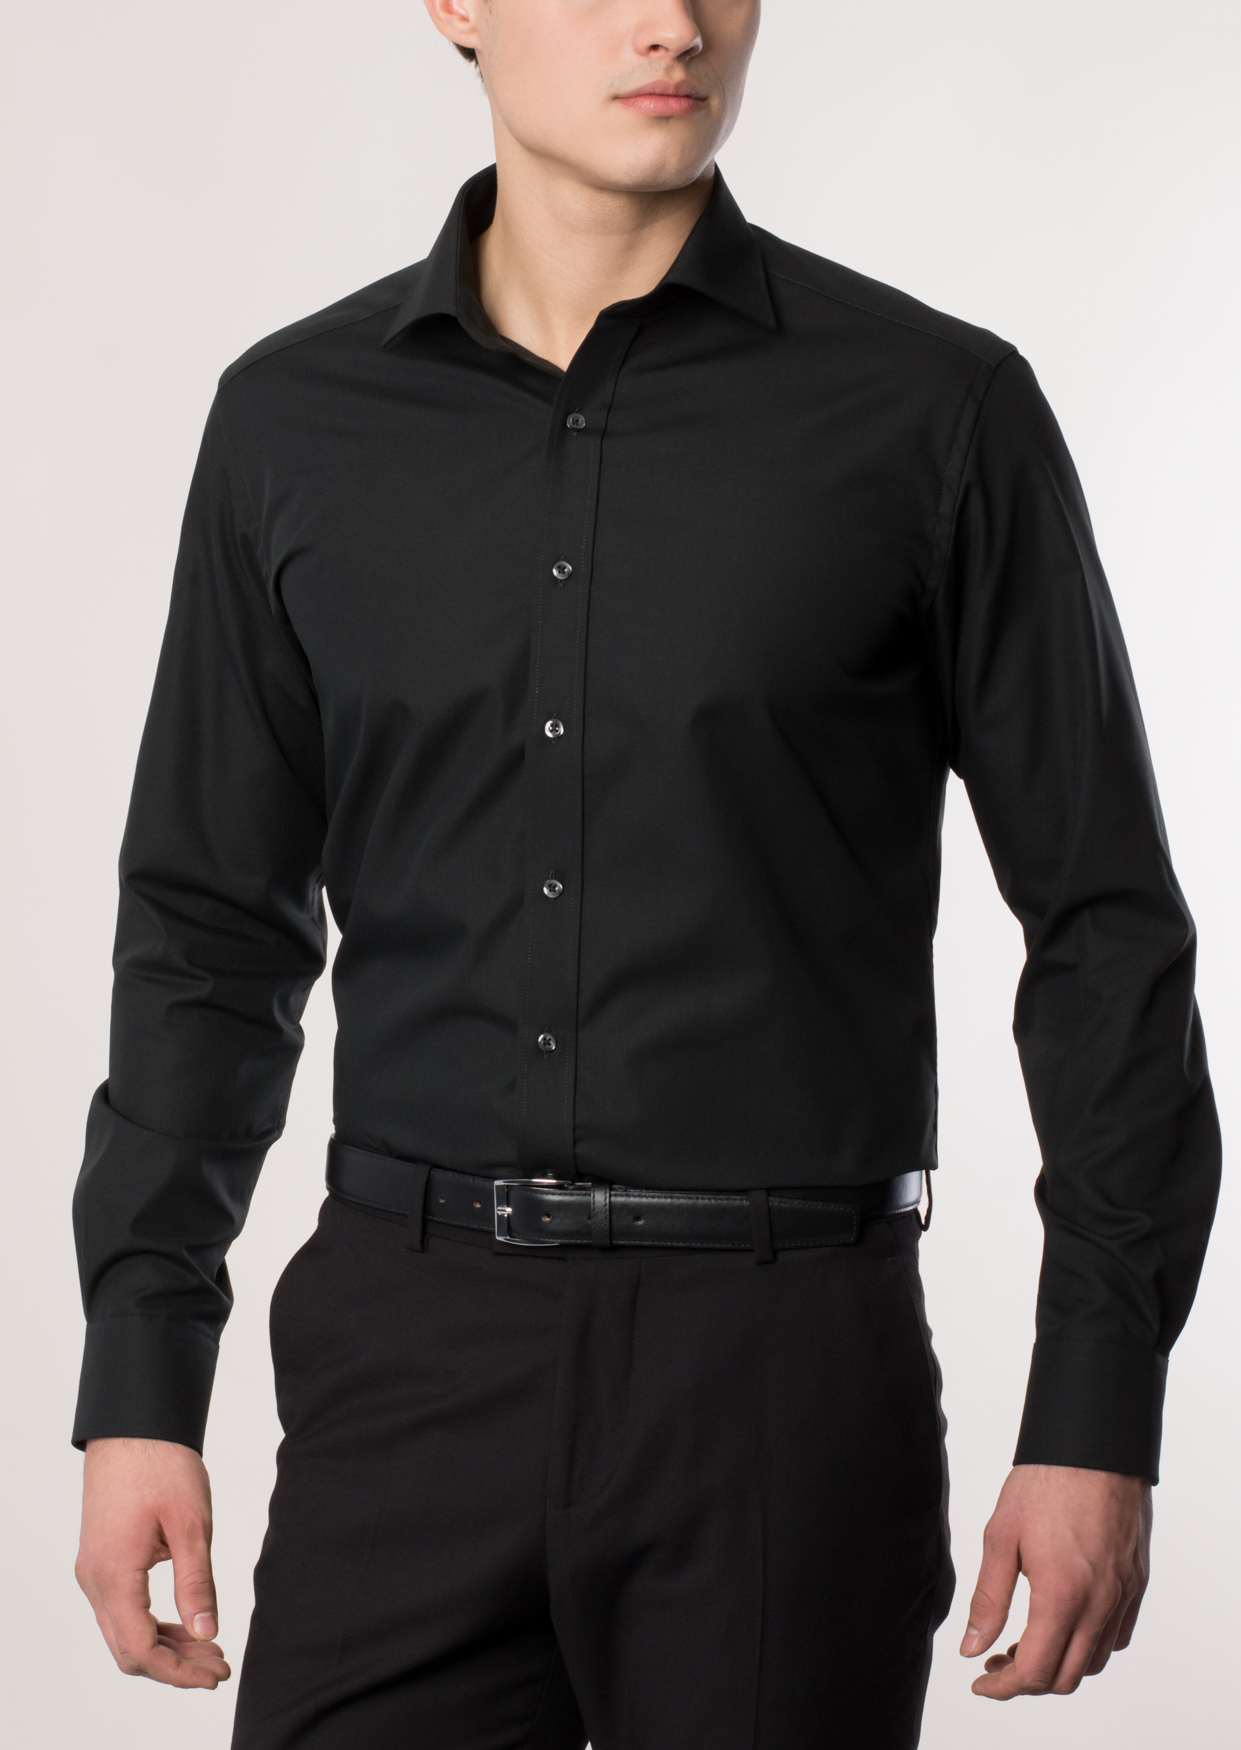 Eterna Herren Hemd Modern Fit ohne Brusttasche schwarz 1100 X177 39 